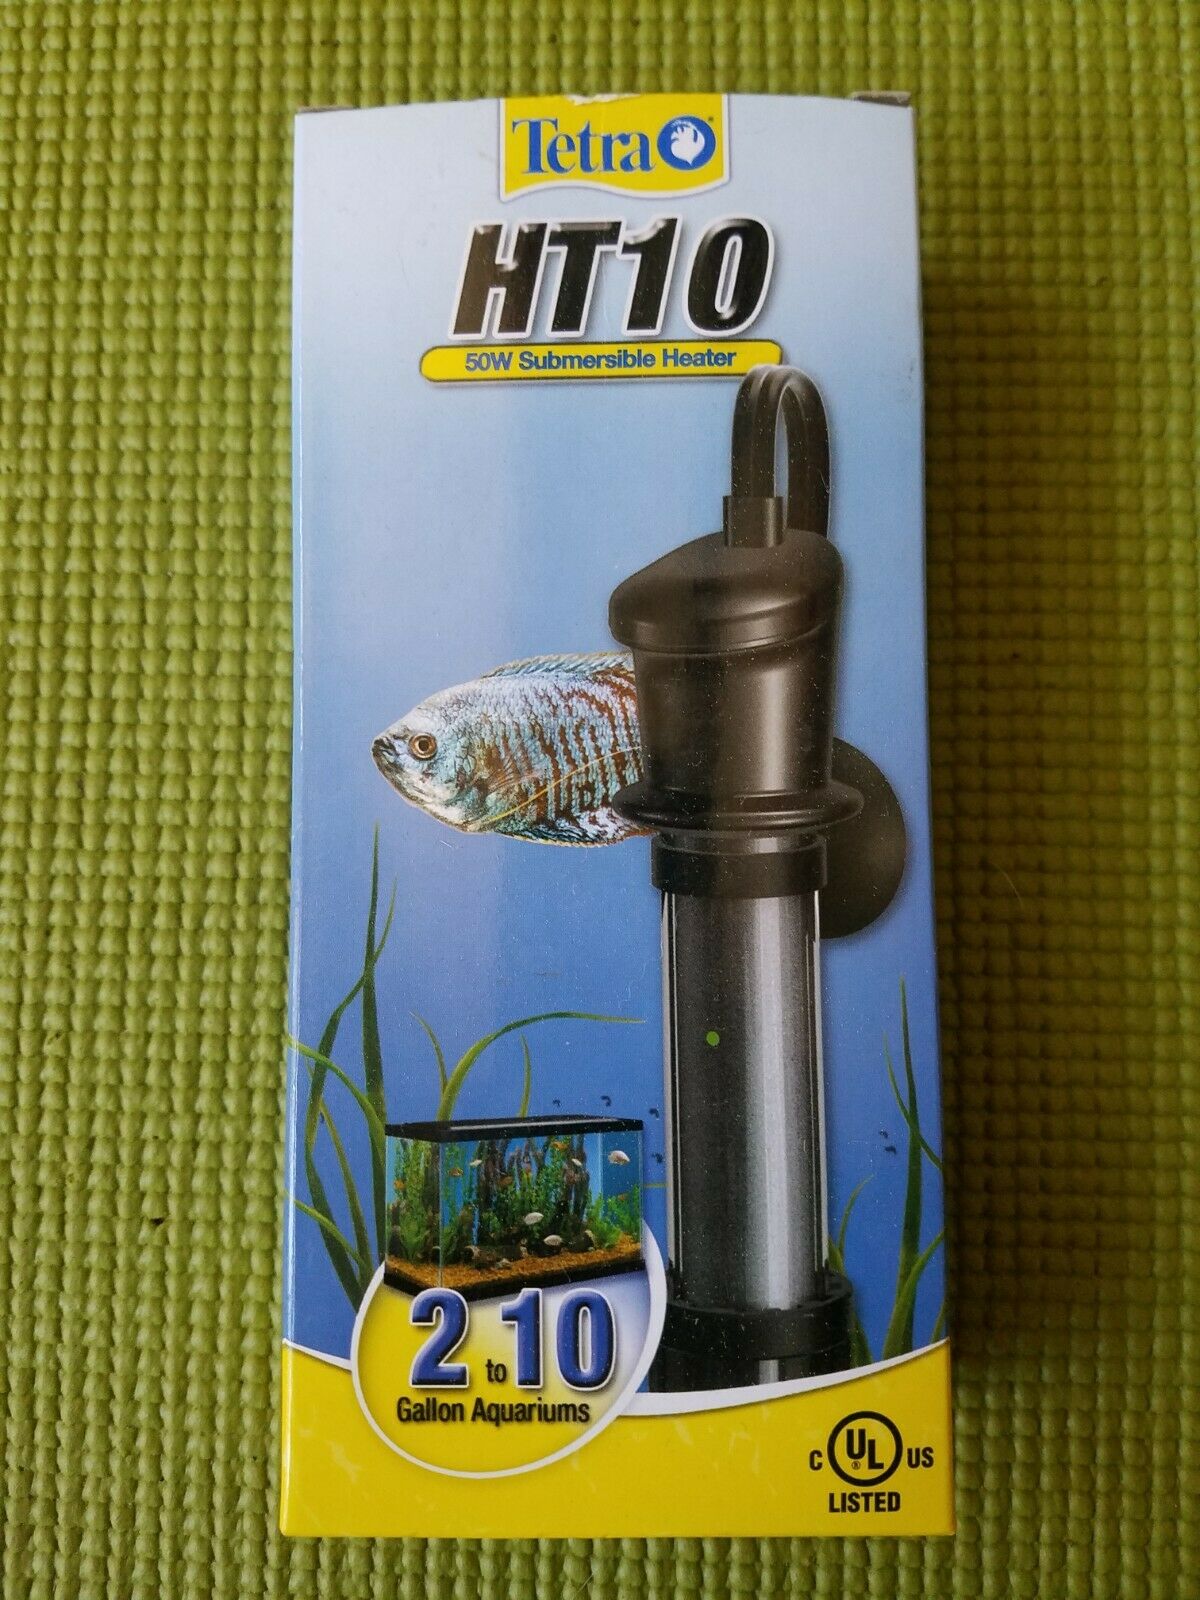 Tetra Ht10 Submersible Aquarium Heater (50-watt)